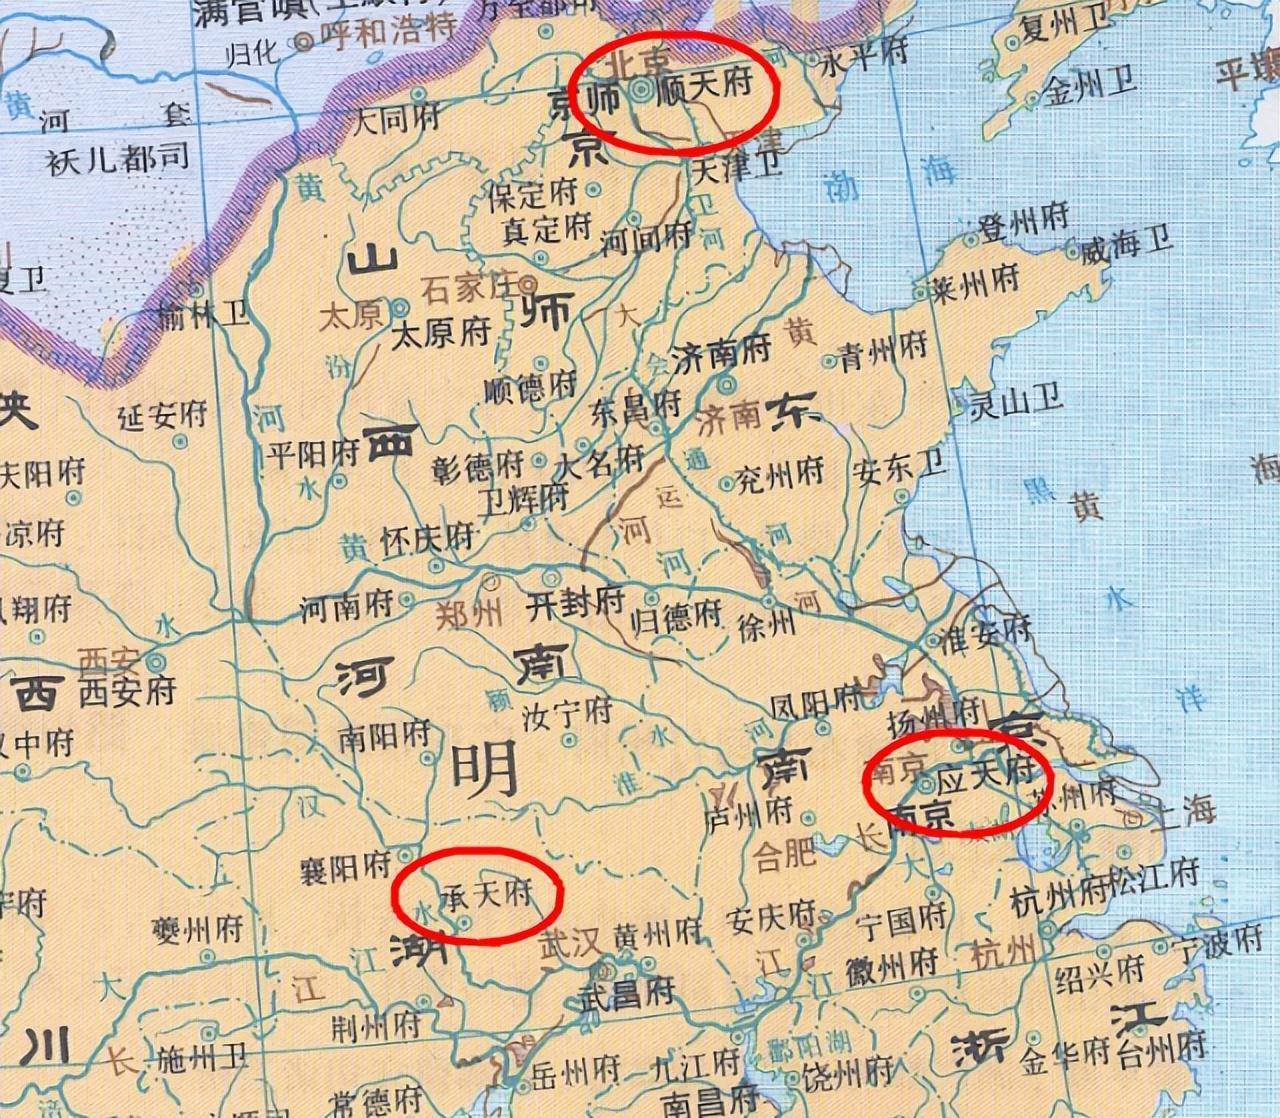 明朝三大“天府”，今天有两个是北京、南京，另一个却仅是县级市